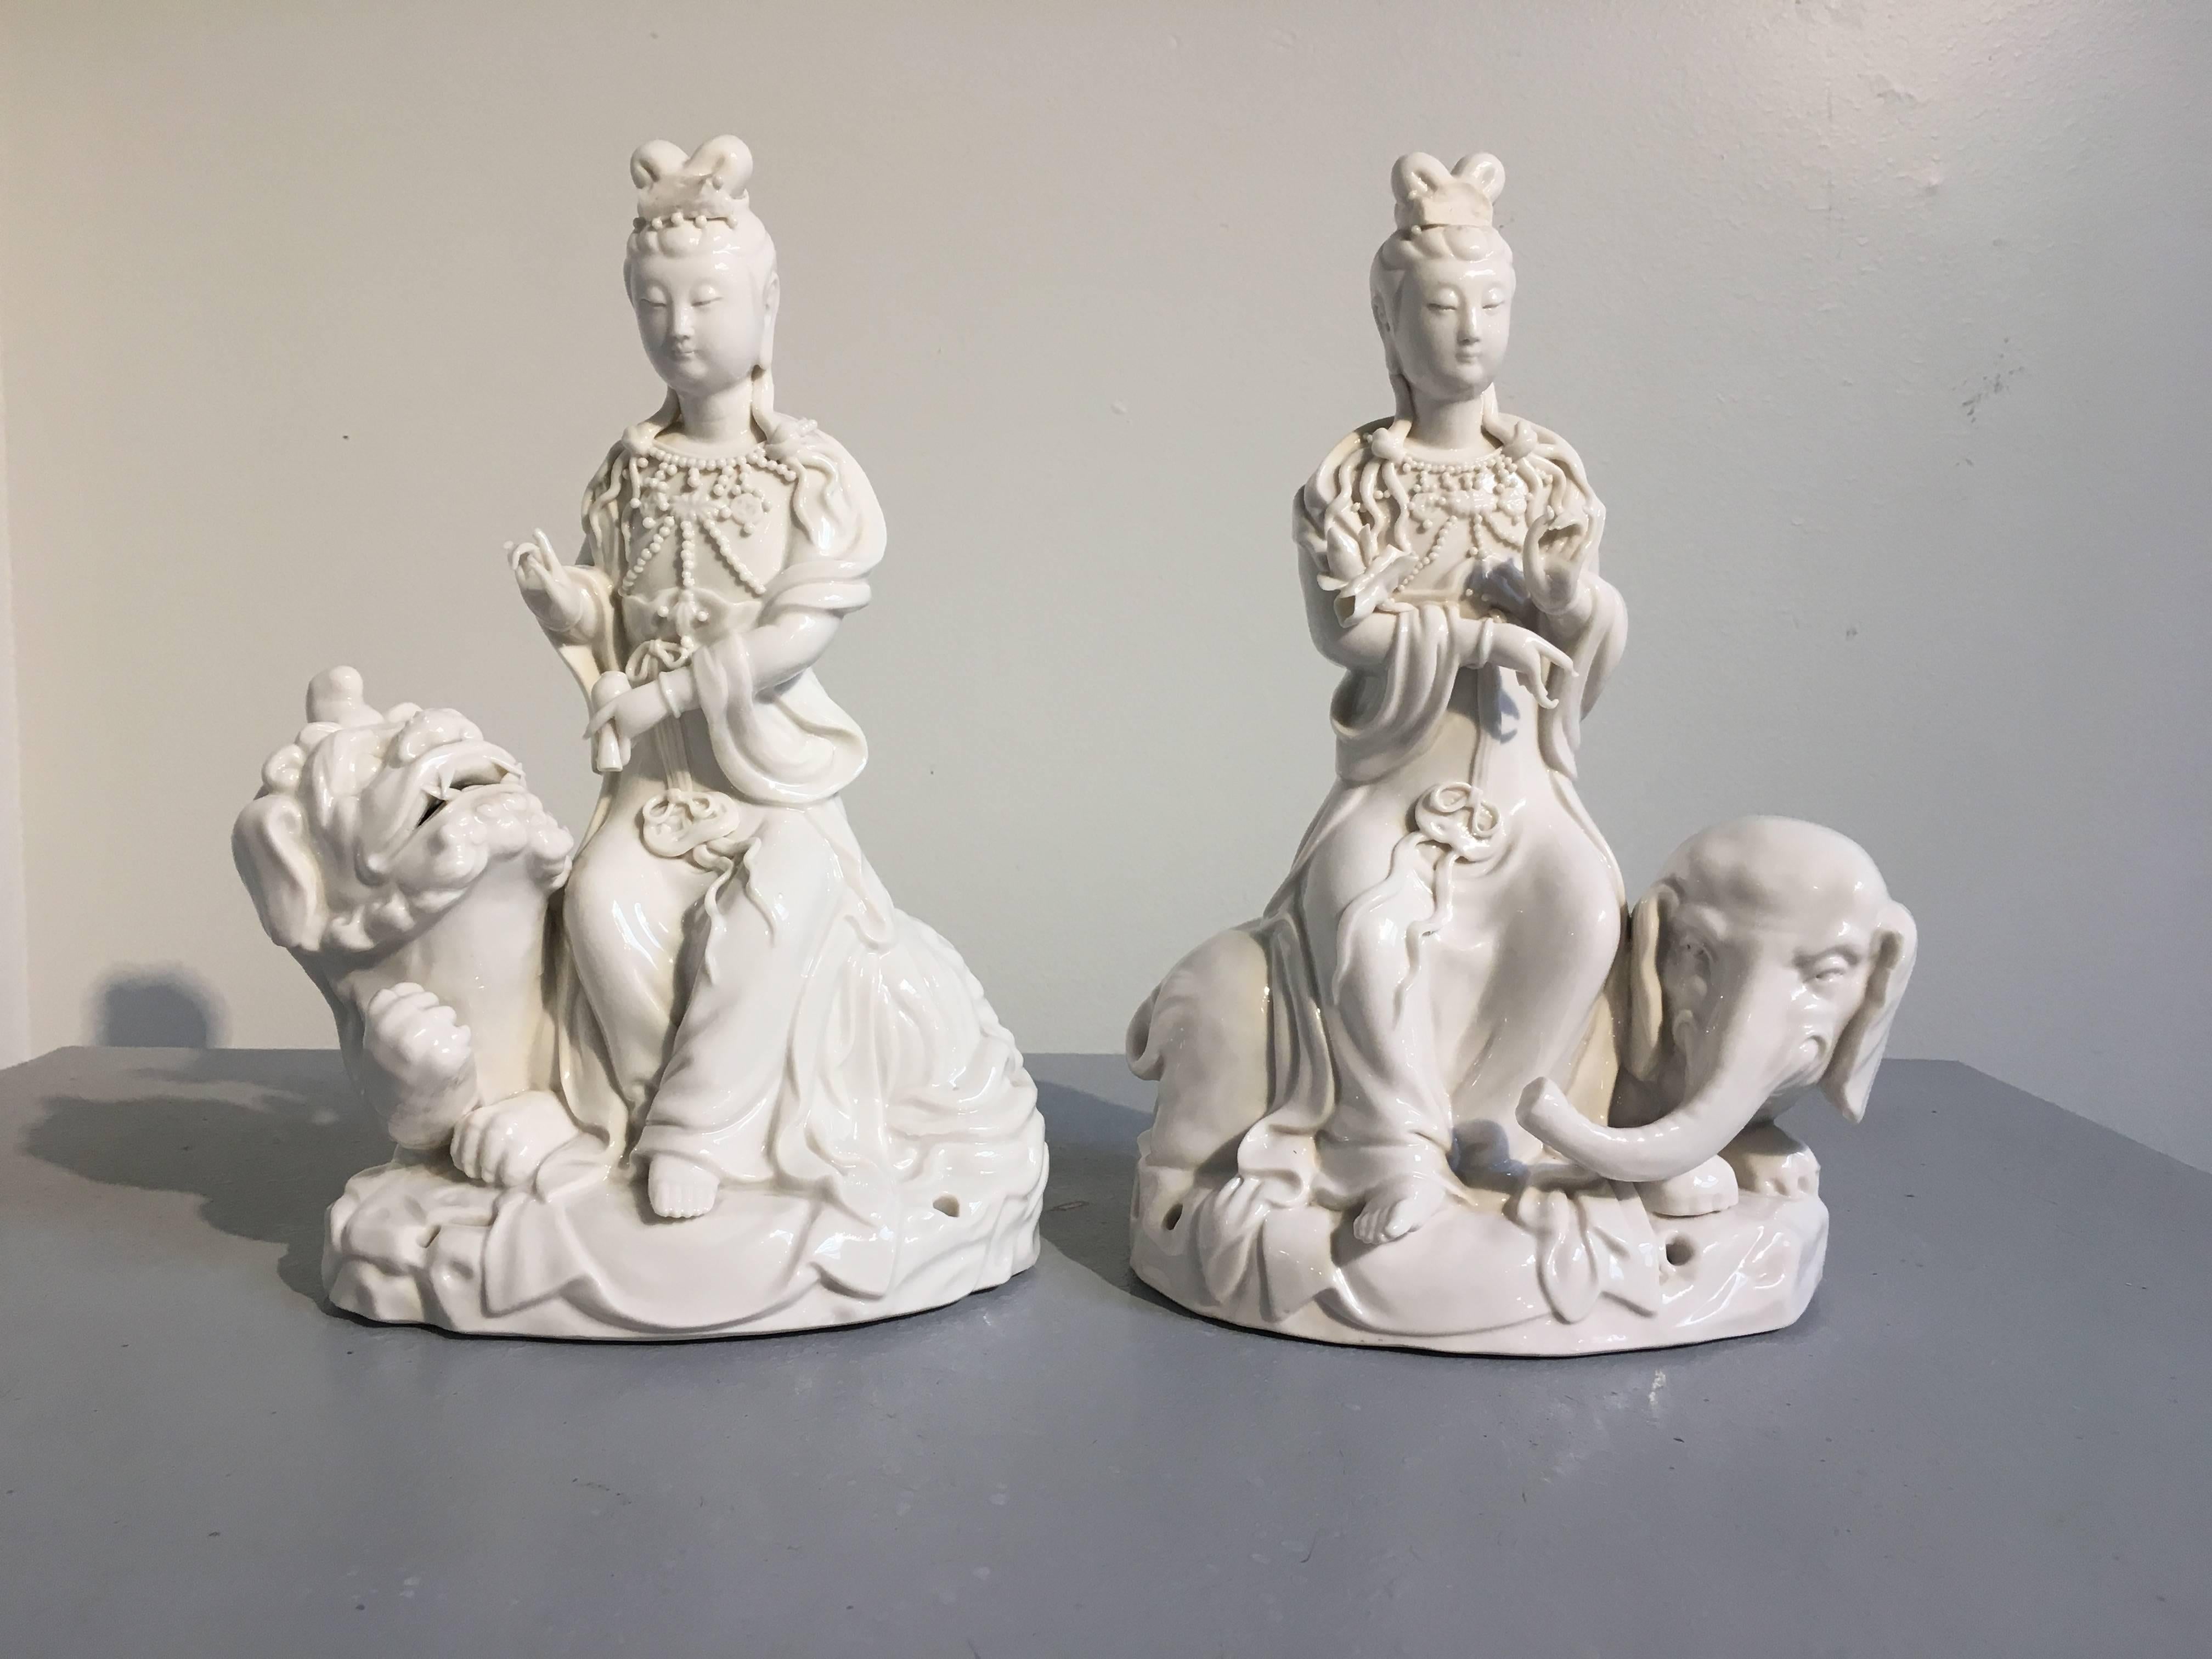 Schönes Paar chinesischer Blanc de Chine-Figuren des Guanyin (Avalokiteshvara) auf Tieren sitzend, Republikepoche, um 1930.
Guanyin, der Bodhisattva der Barmherzigkeit und des Mitgefühls, ist als matronenhafte Figur dargestellt, die in voluminöse